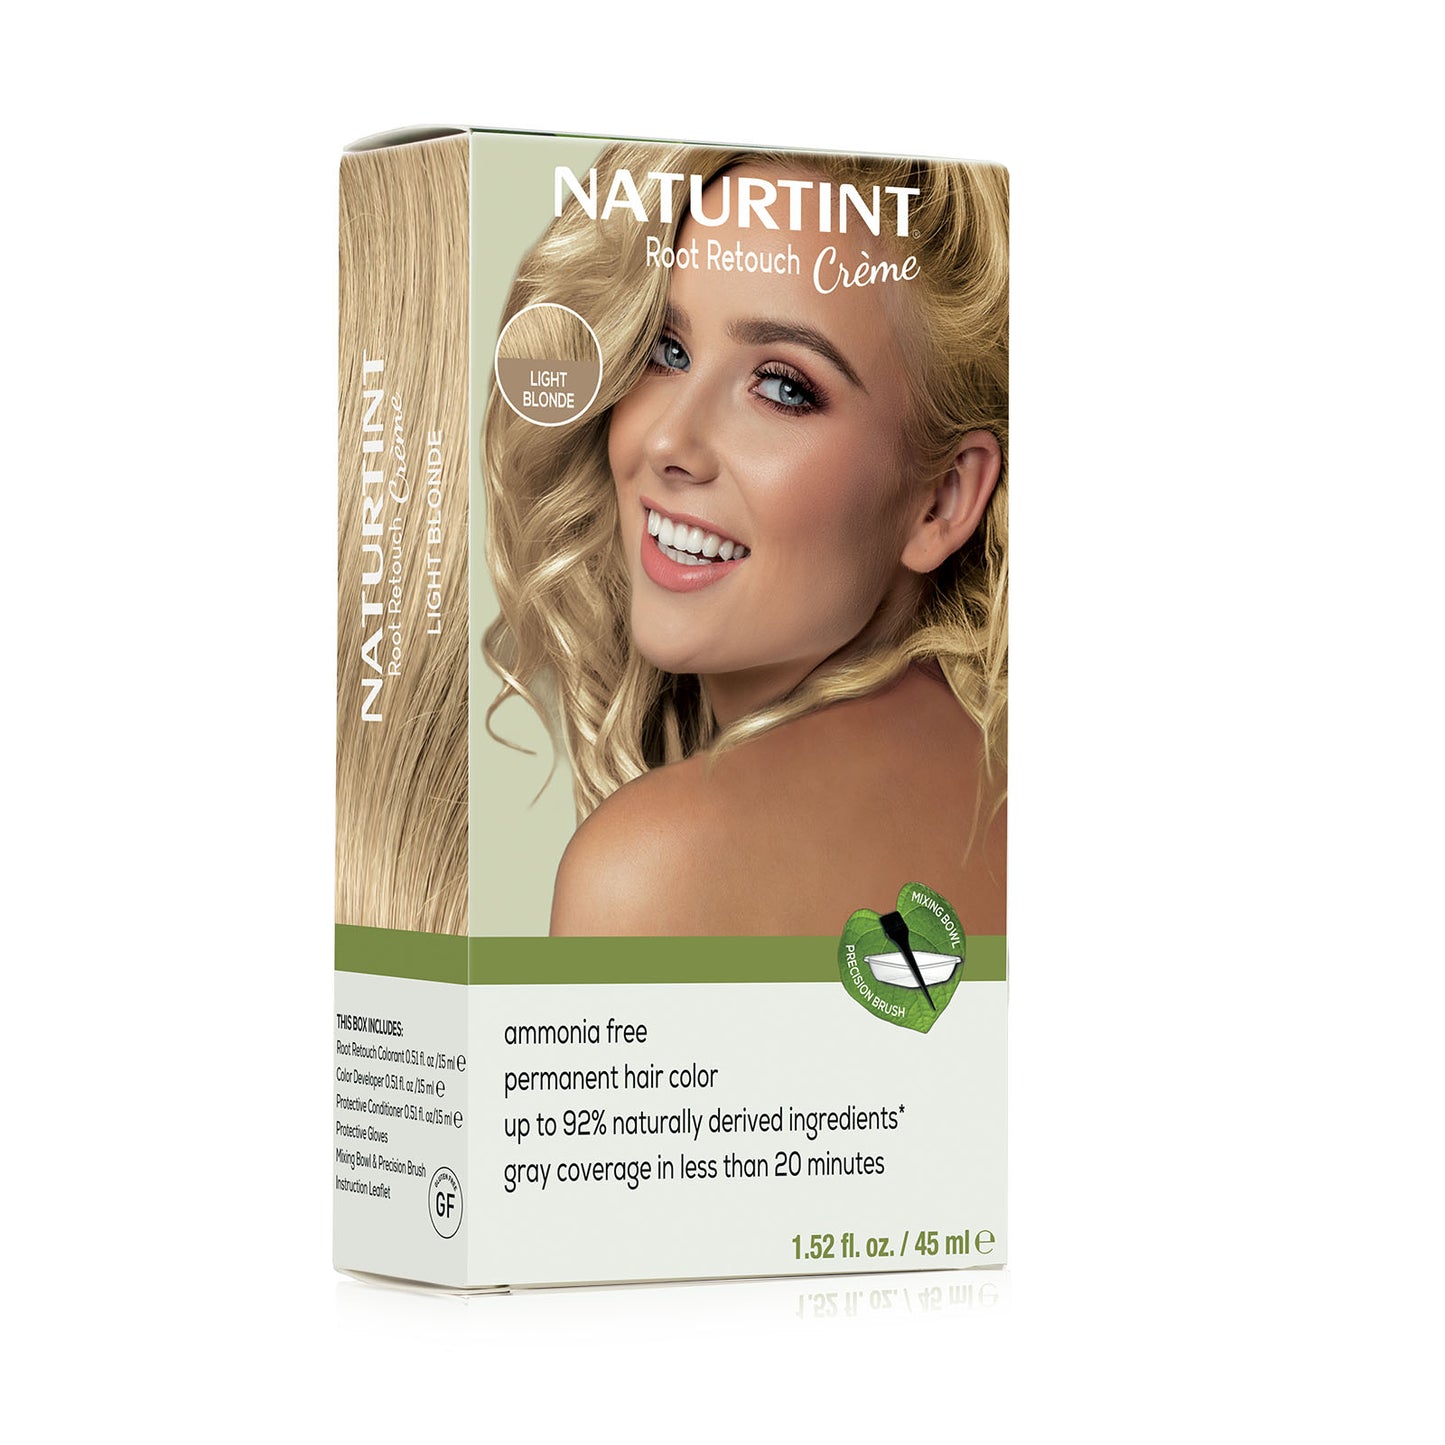 Naturtint Root Retouch Crème Permanent Hair Color- Light blonde